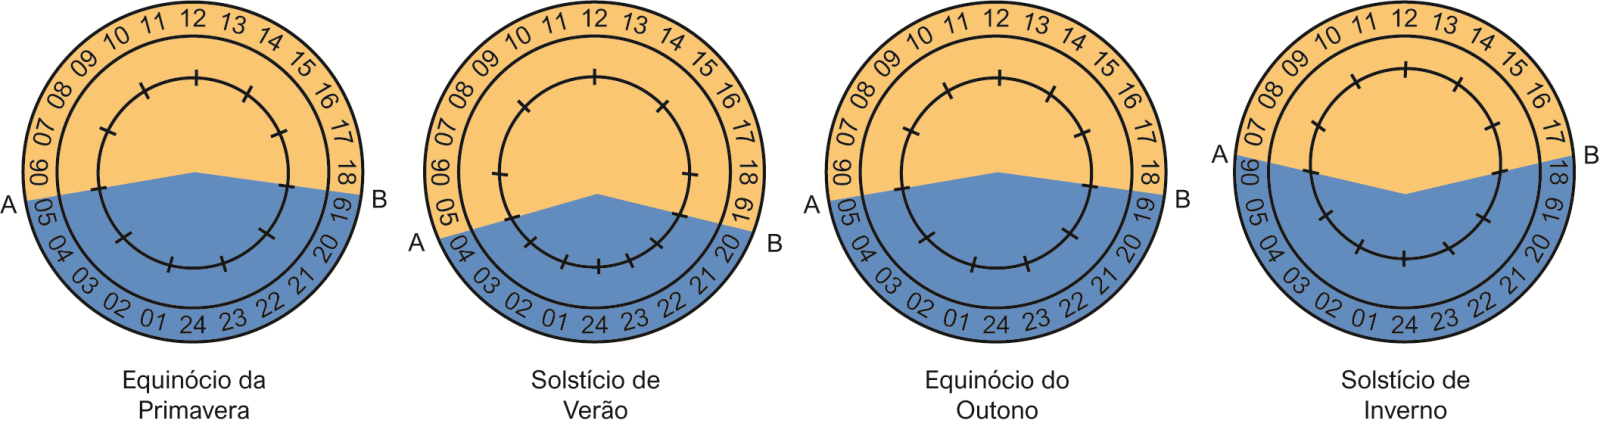 ciclo circadiano equinócios e solistícios